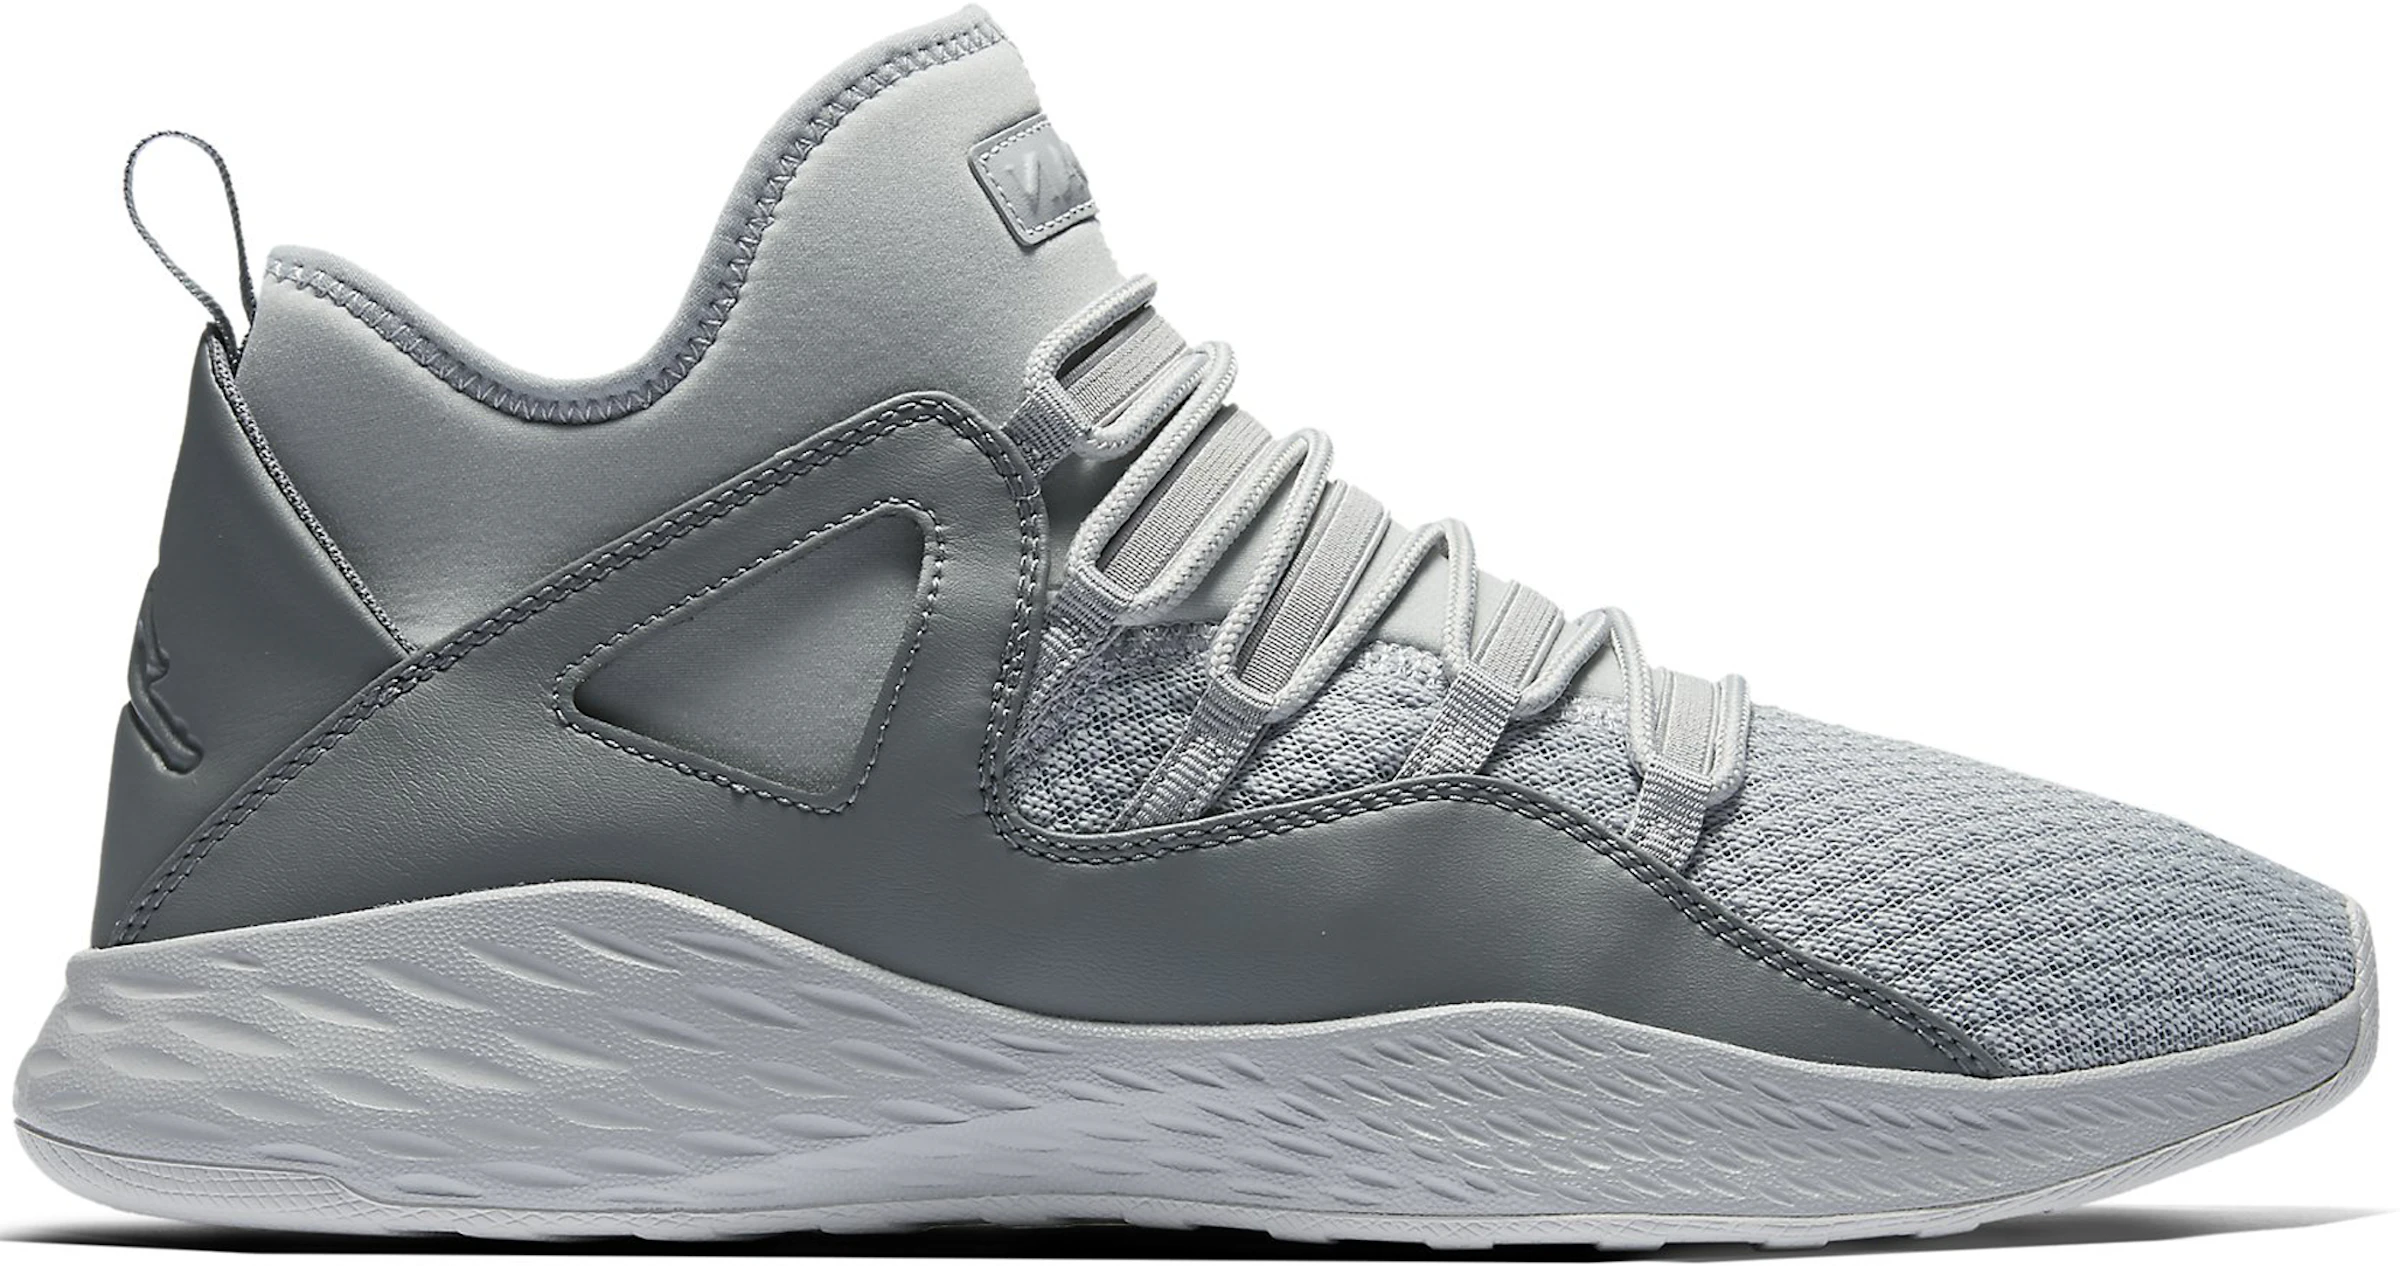 Compra Air Jordan Calzado y sneakers nuevos - StockX